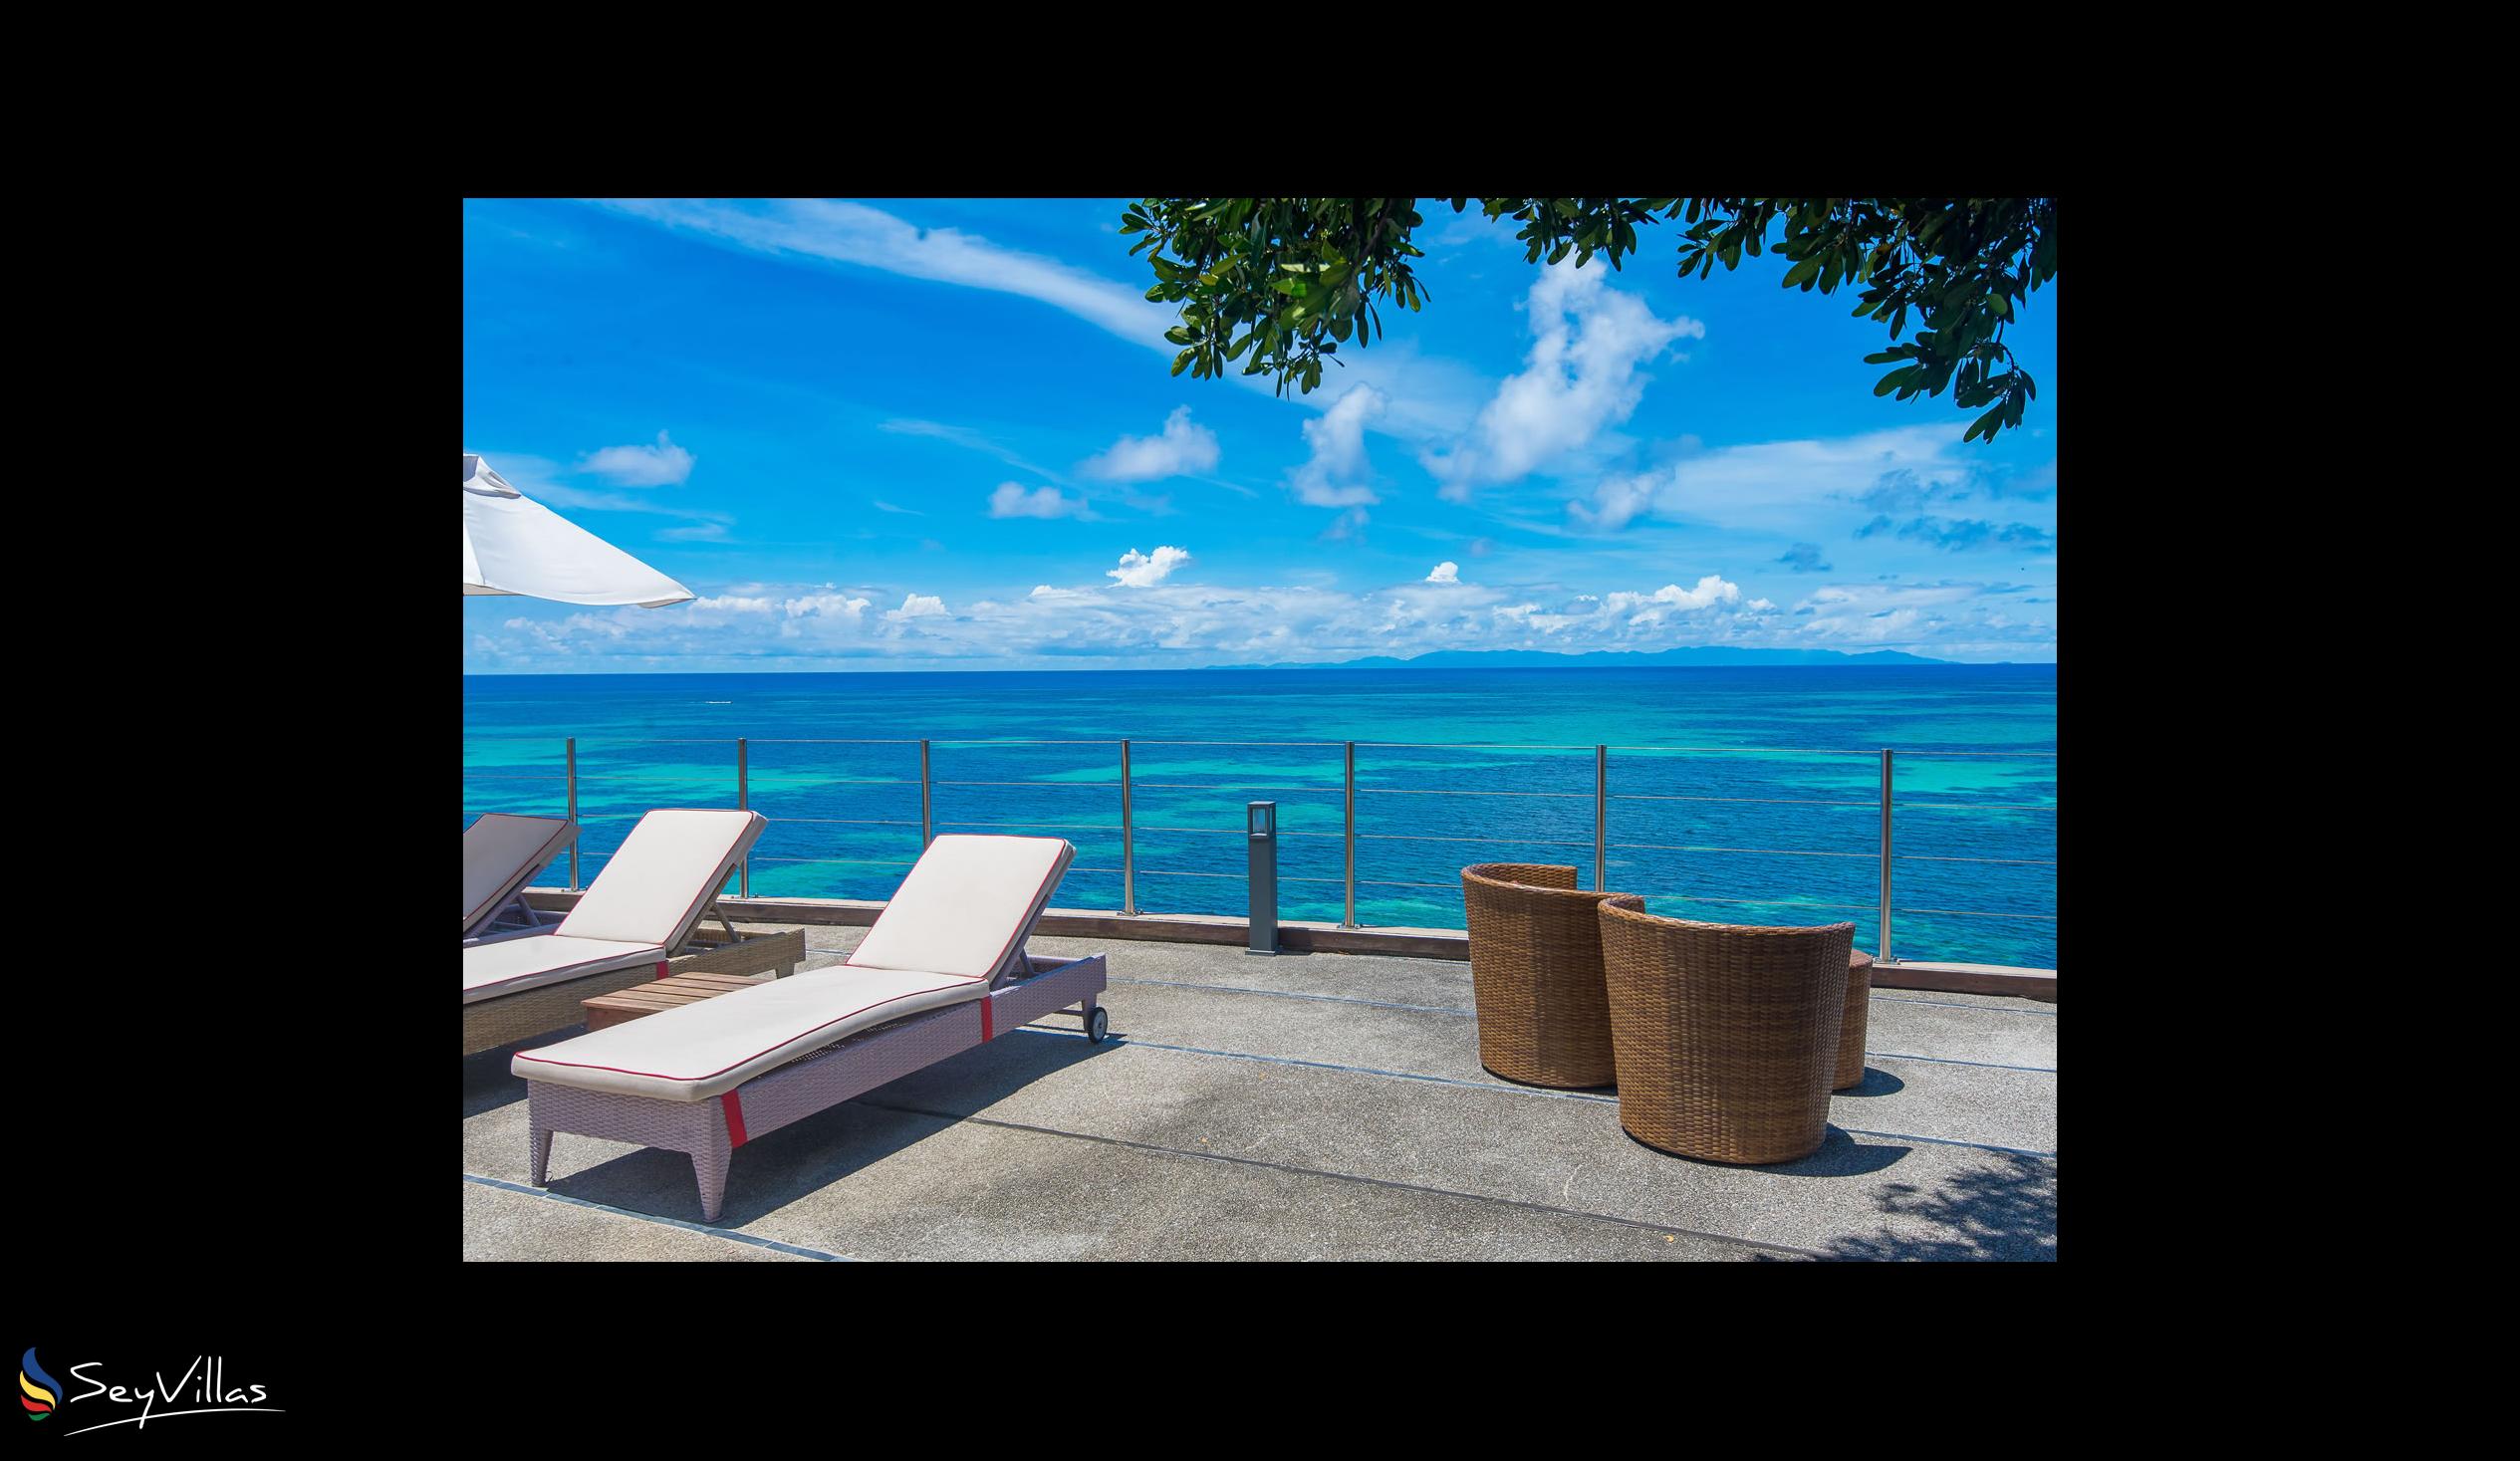 Foto 13: Coco de Mer & Black Parrot Suites - Aussenbereich - Praslin (Seychellen)